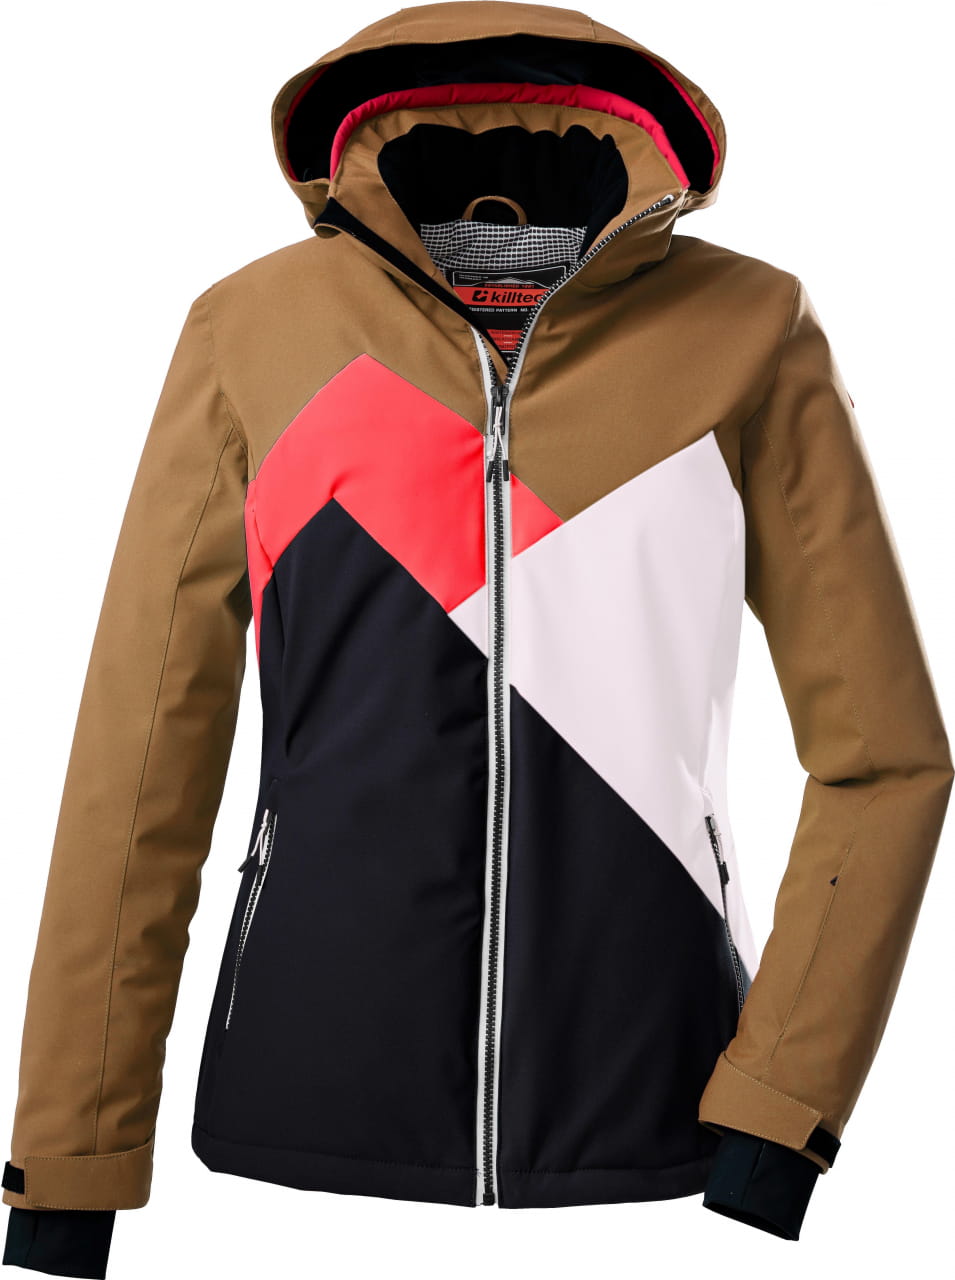 Dámská lyžařská bunda Killtec Ksw 83 Wmn Ski Jacket